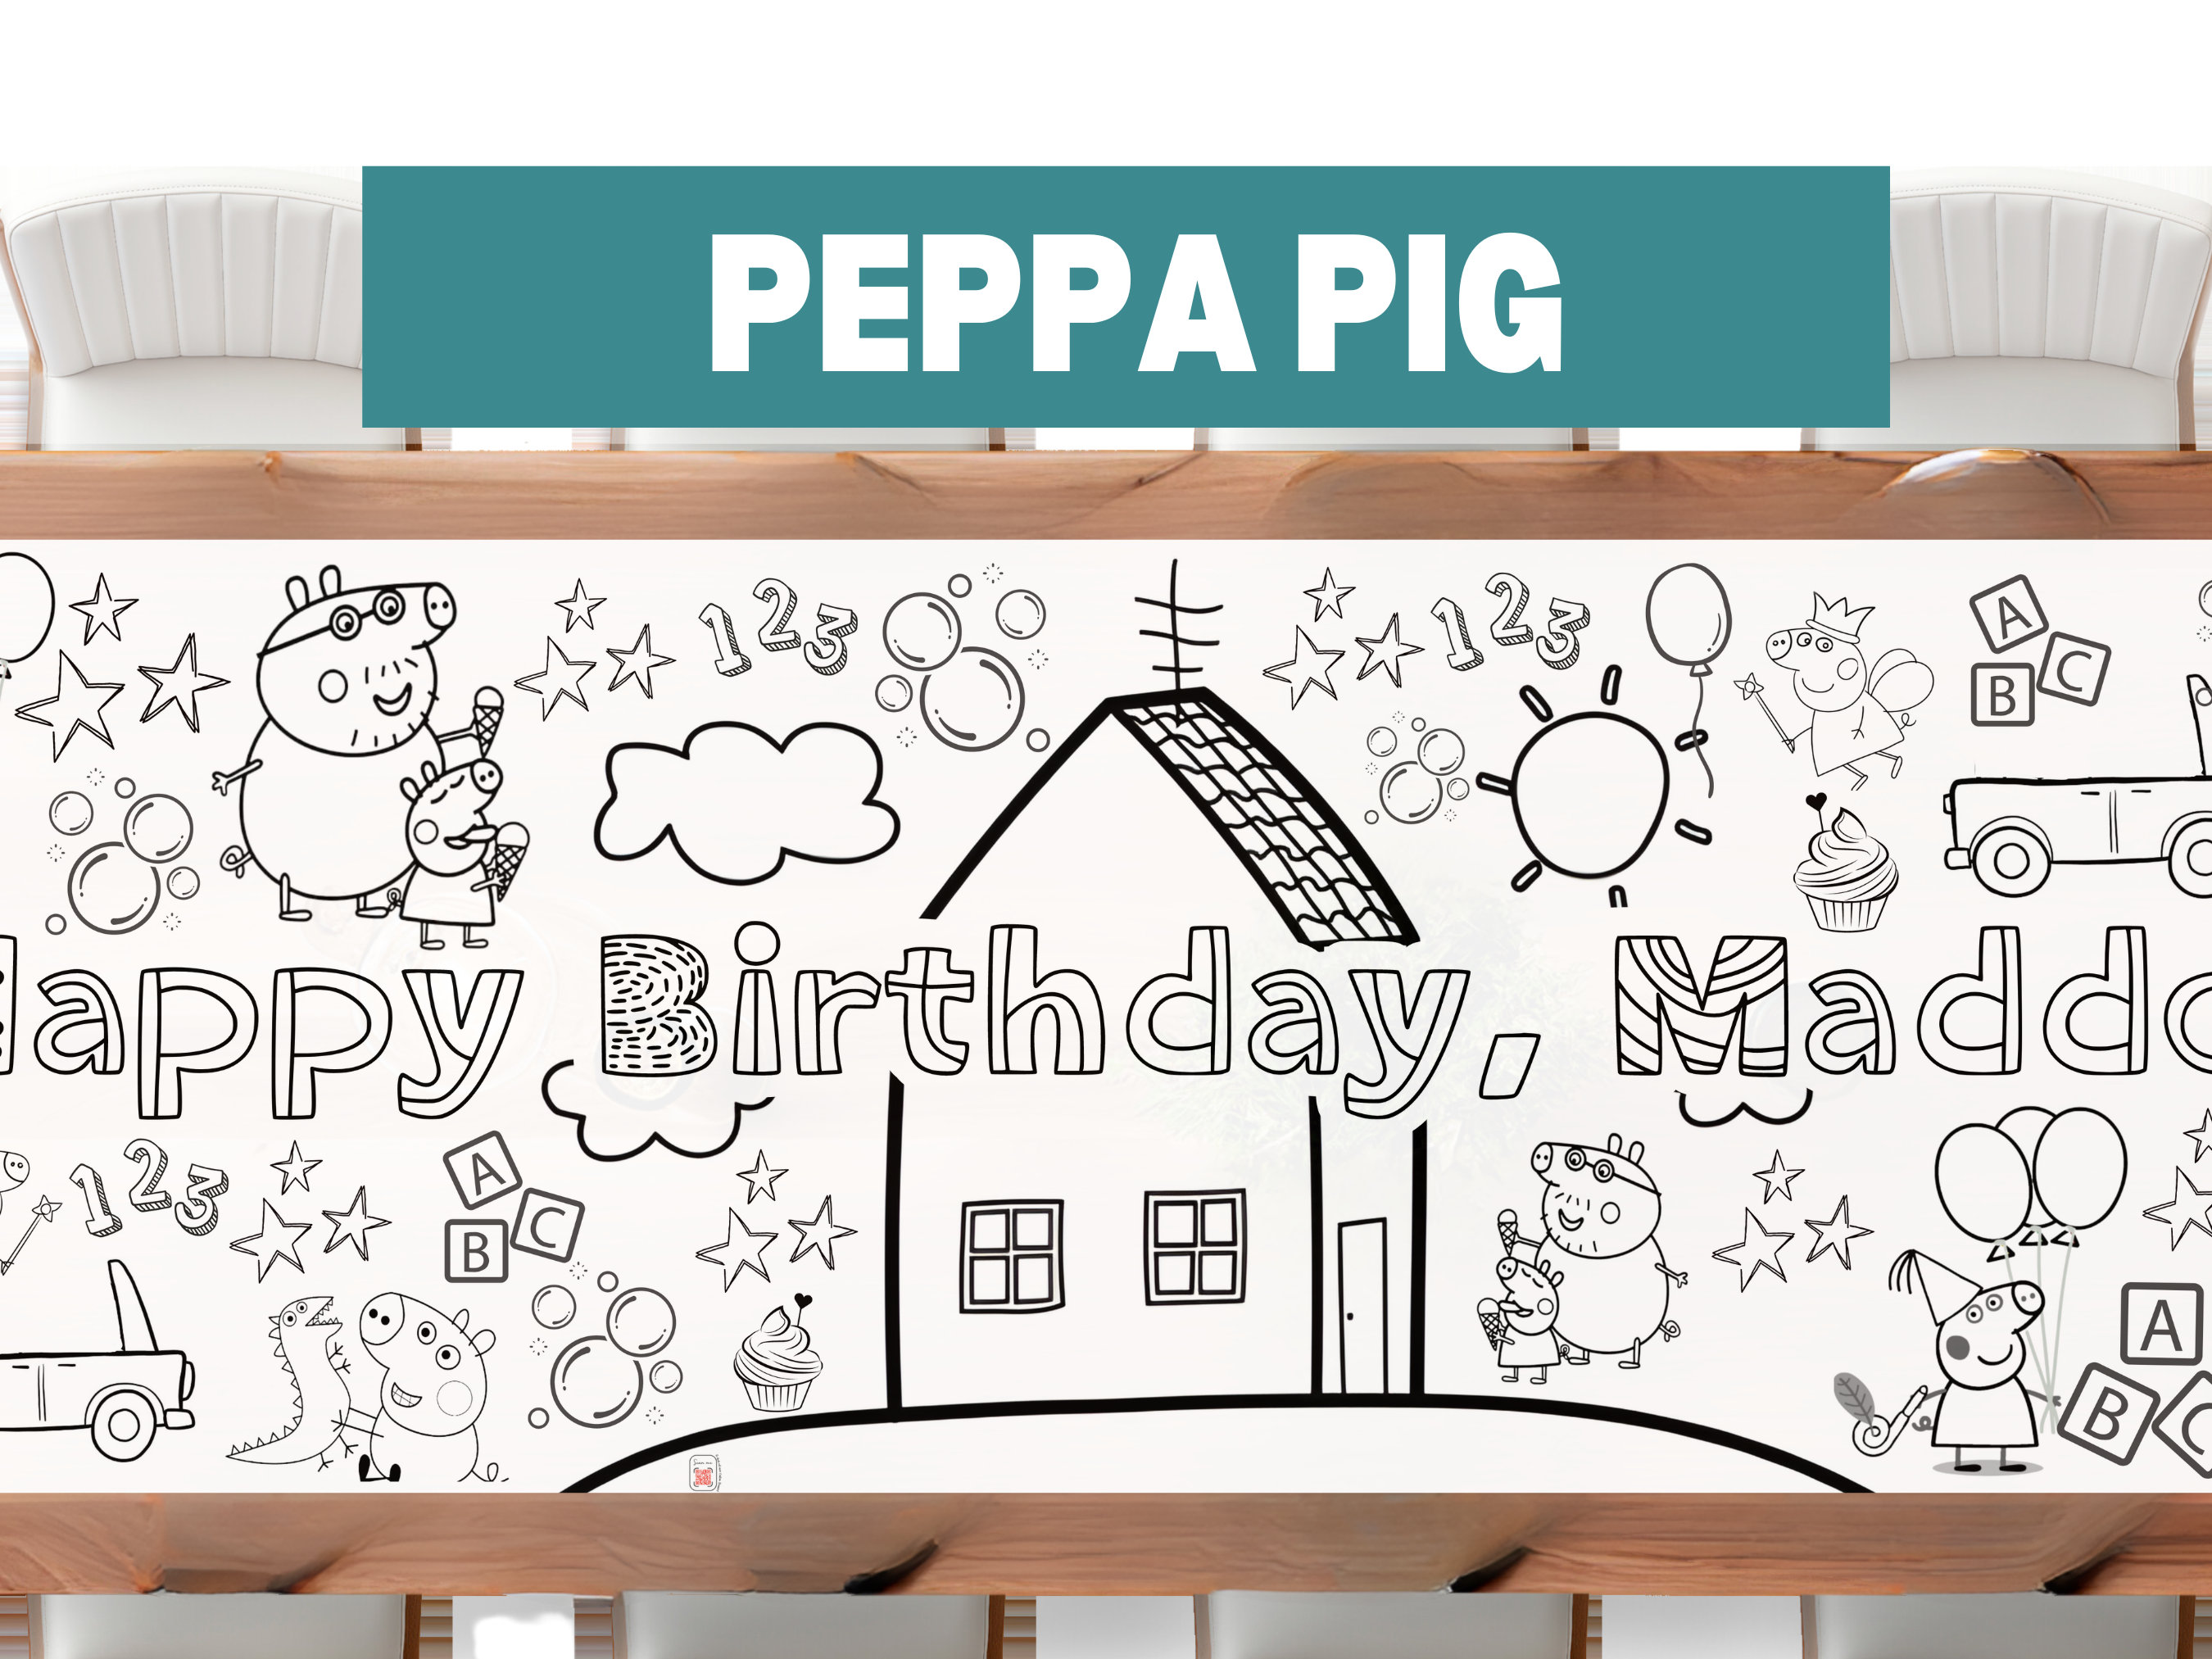 Casa de cerdo peppa / Prop / Peppa Pig / Cumpleaños / Decoraciones por Suly  / / Hecho a mano / Casa Peppa / Peppa -  España